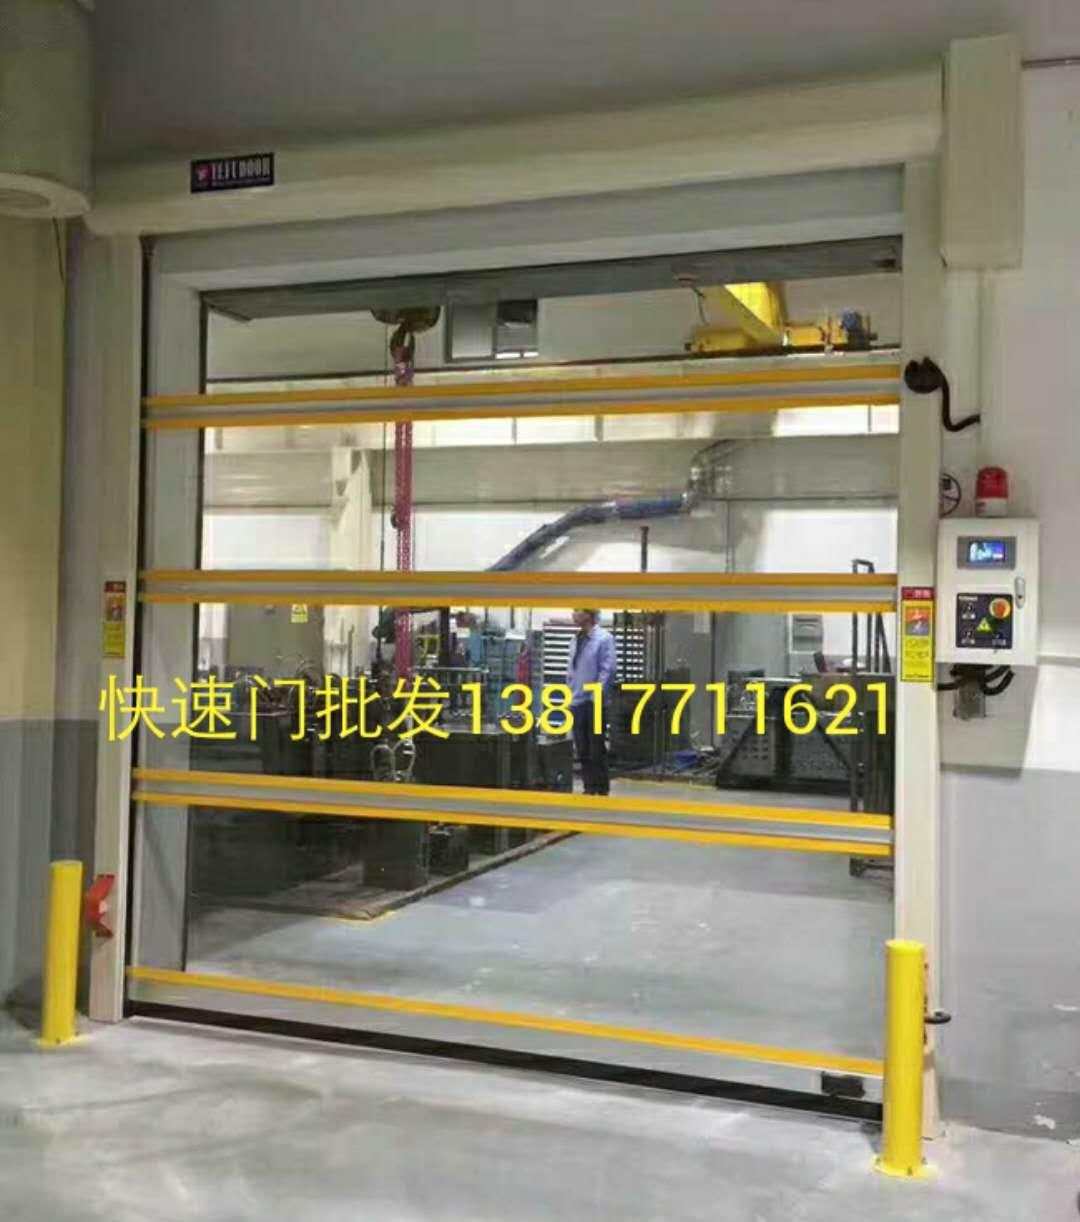 上海4S店透视滑升门安装及维修